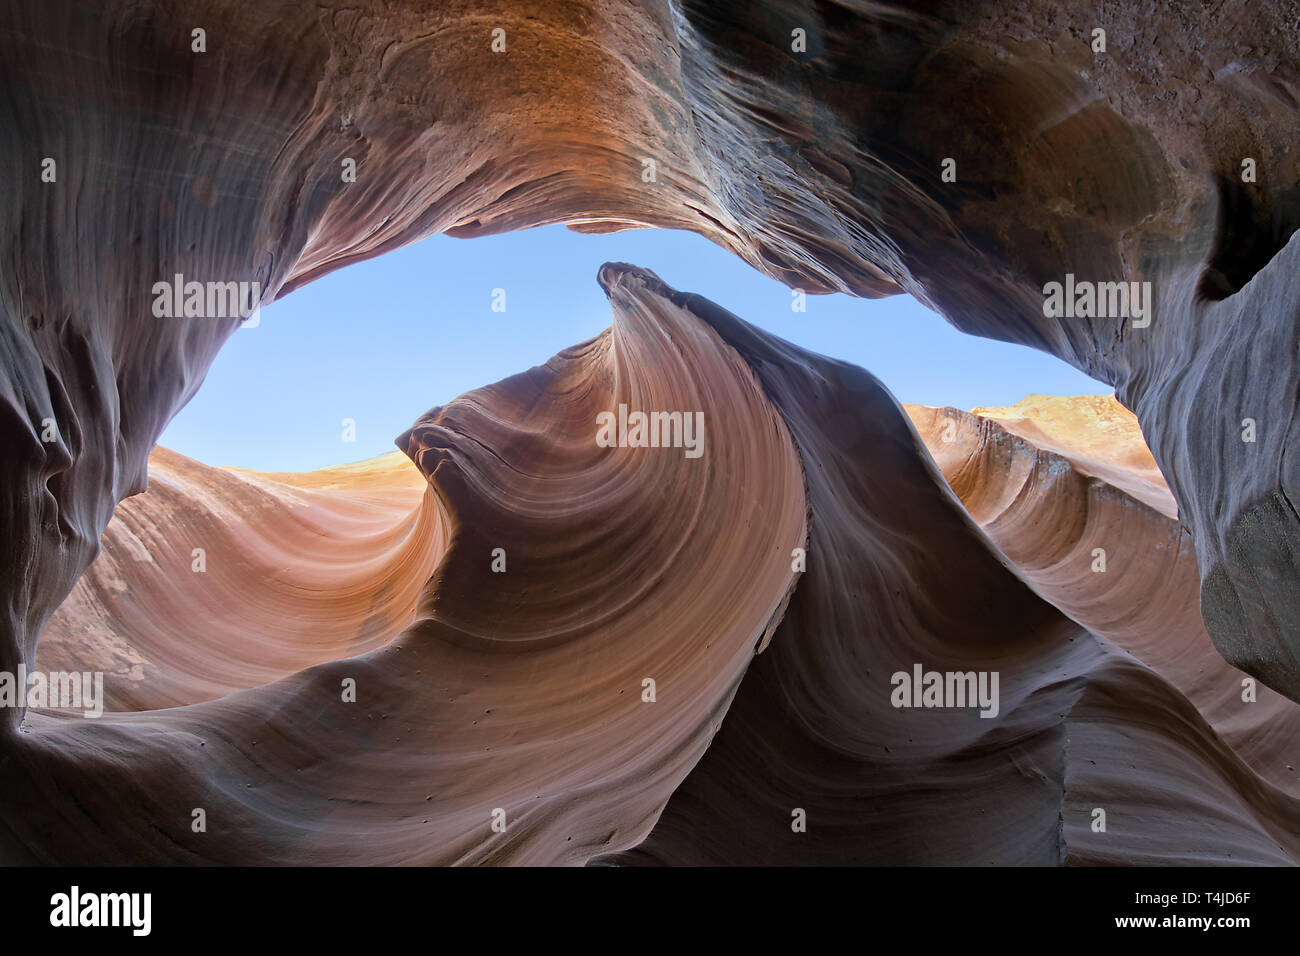 Diese Slot Canyons sind durch Erosion, eine fließende Form auf die sandsteinwände gebildet. Sonnenlicht produzieren einen schönen ethereal Lichteffekt. Stockfoto